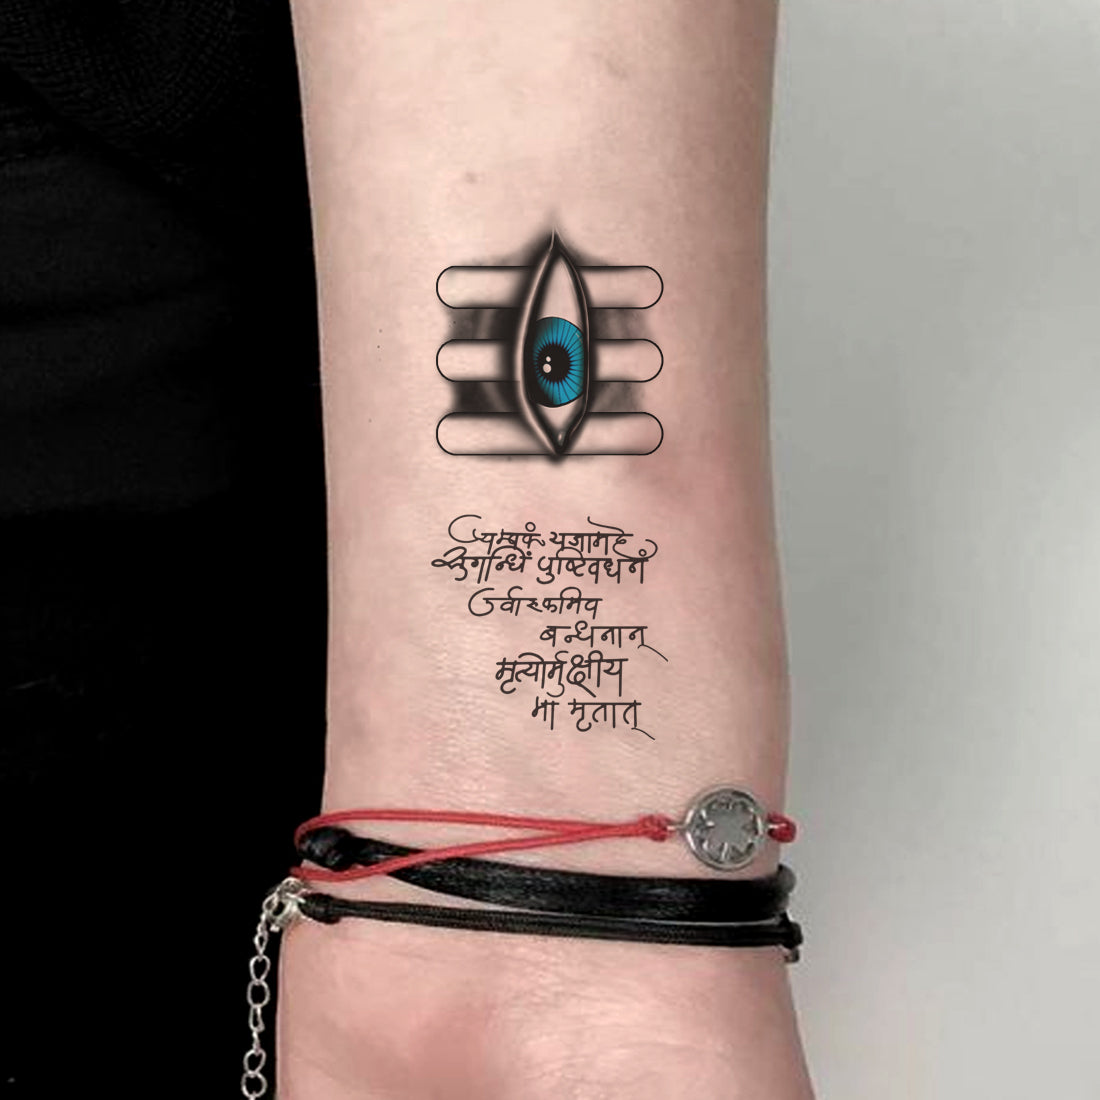 Realistic Black and Grey Shiva Tandav Tattoo 3 | Tattoos, Tattoo artists,  Cool tattoos